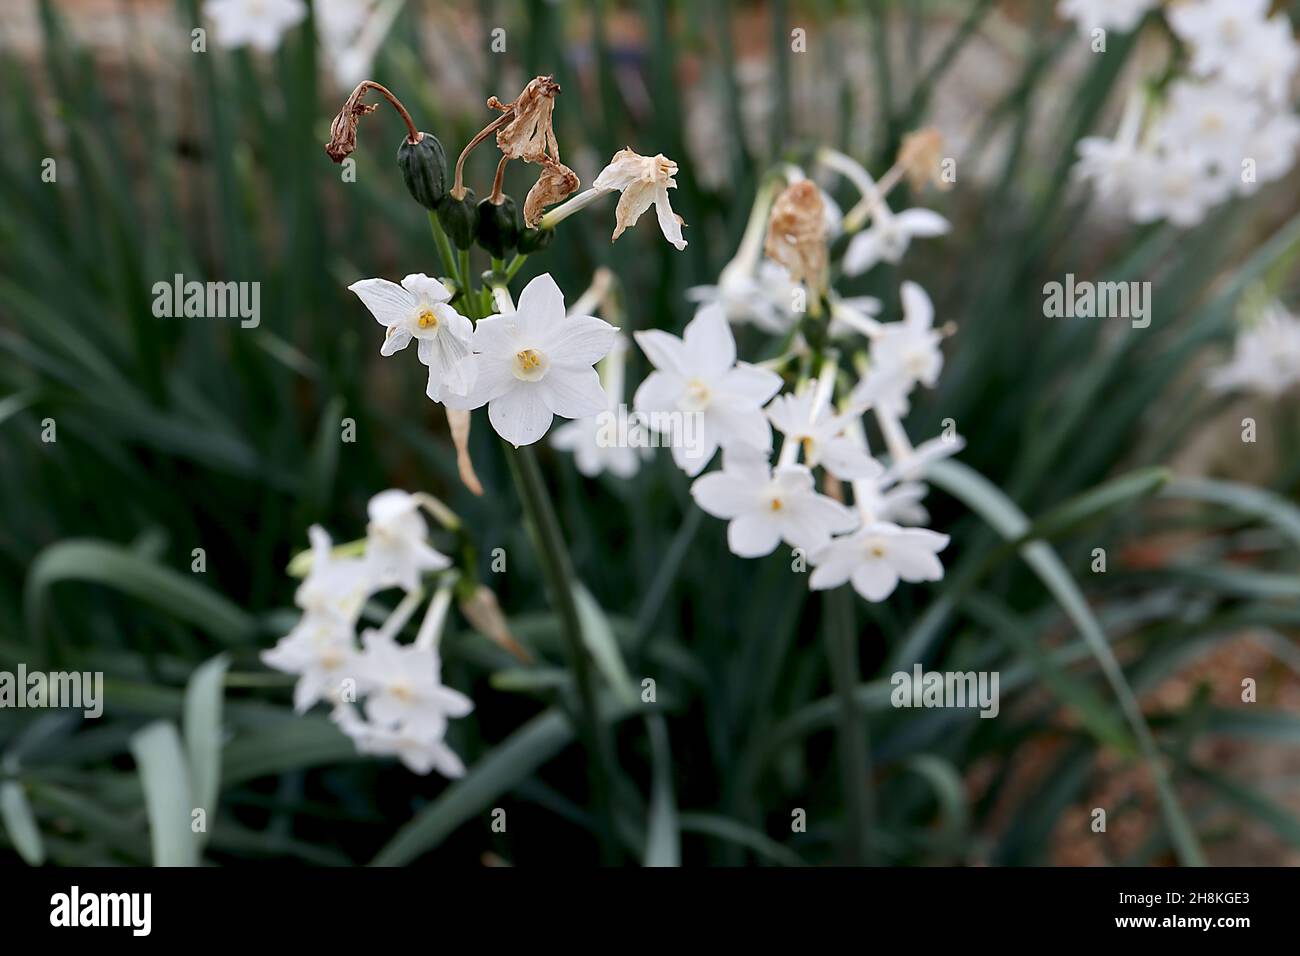 Narcissus papyraceus var polyanthos Division 13 Nom botanique daffodil blanc de papier – ombelles de fleurs blanches avec une petite tasse blanche, novembre, Angleterre, Banque D'Images